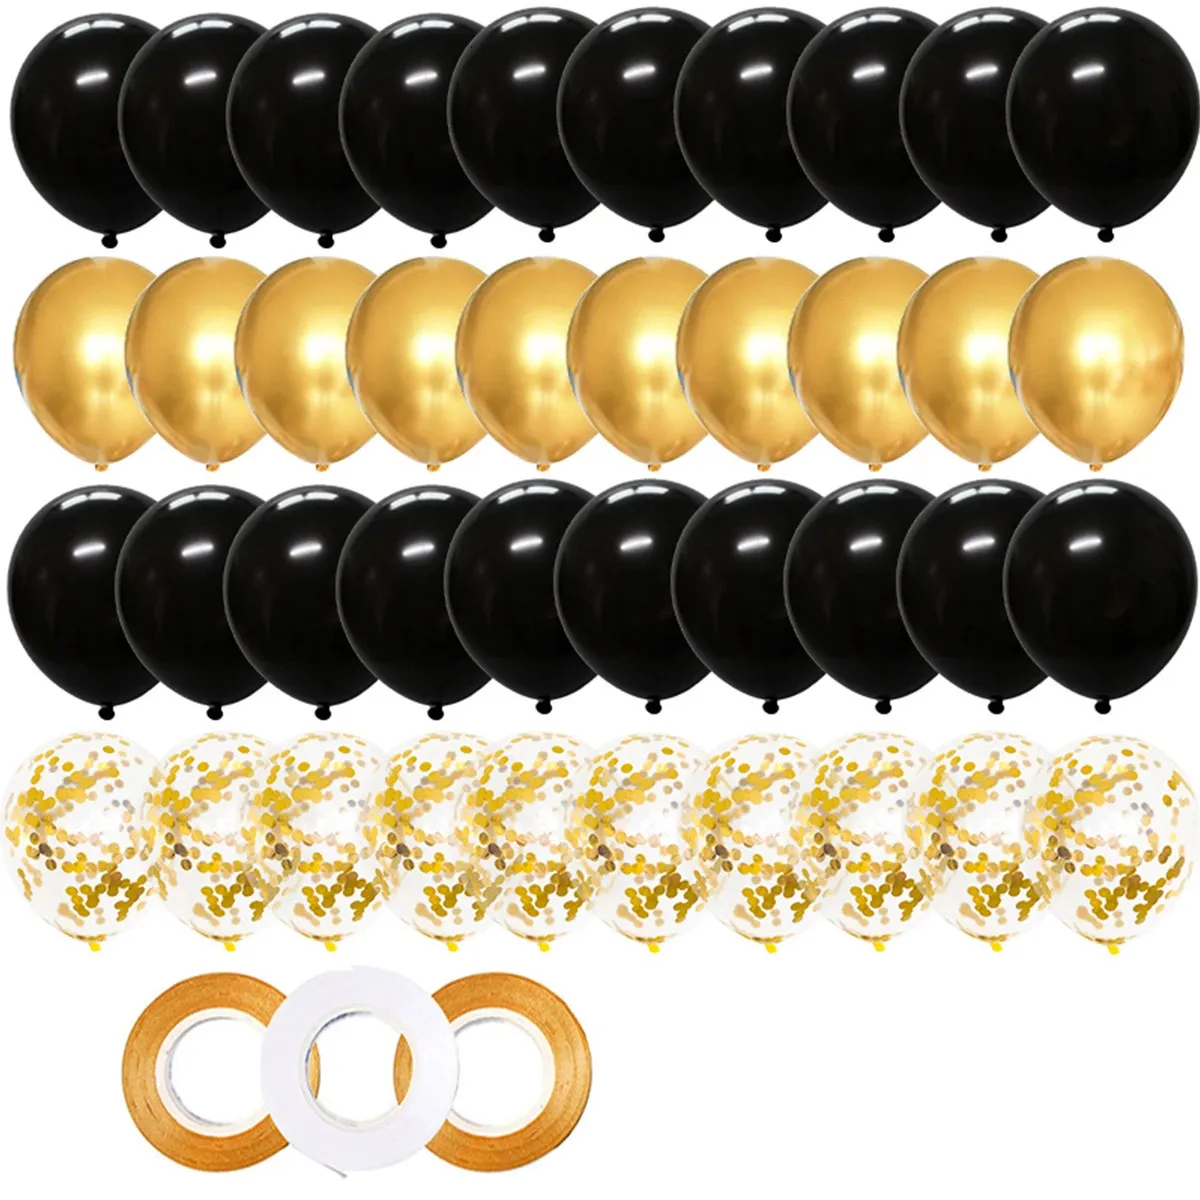 Decorações de Natal 40 pcs 12 polegadas ouro preto misturado confetes balões de látex menino menina aniversário adulto mulher homem festa formatura ano 231130